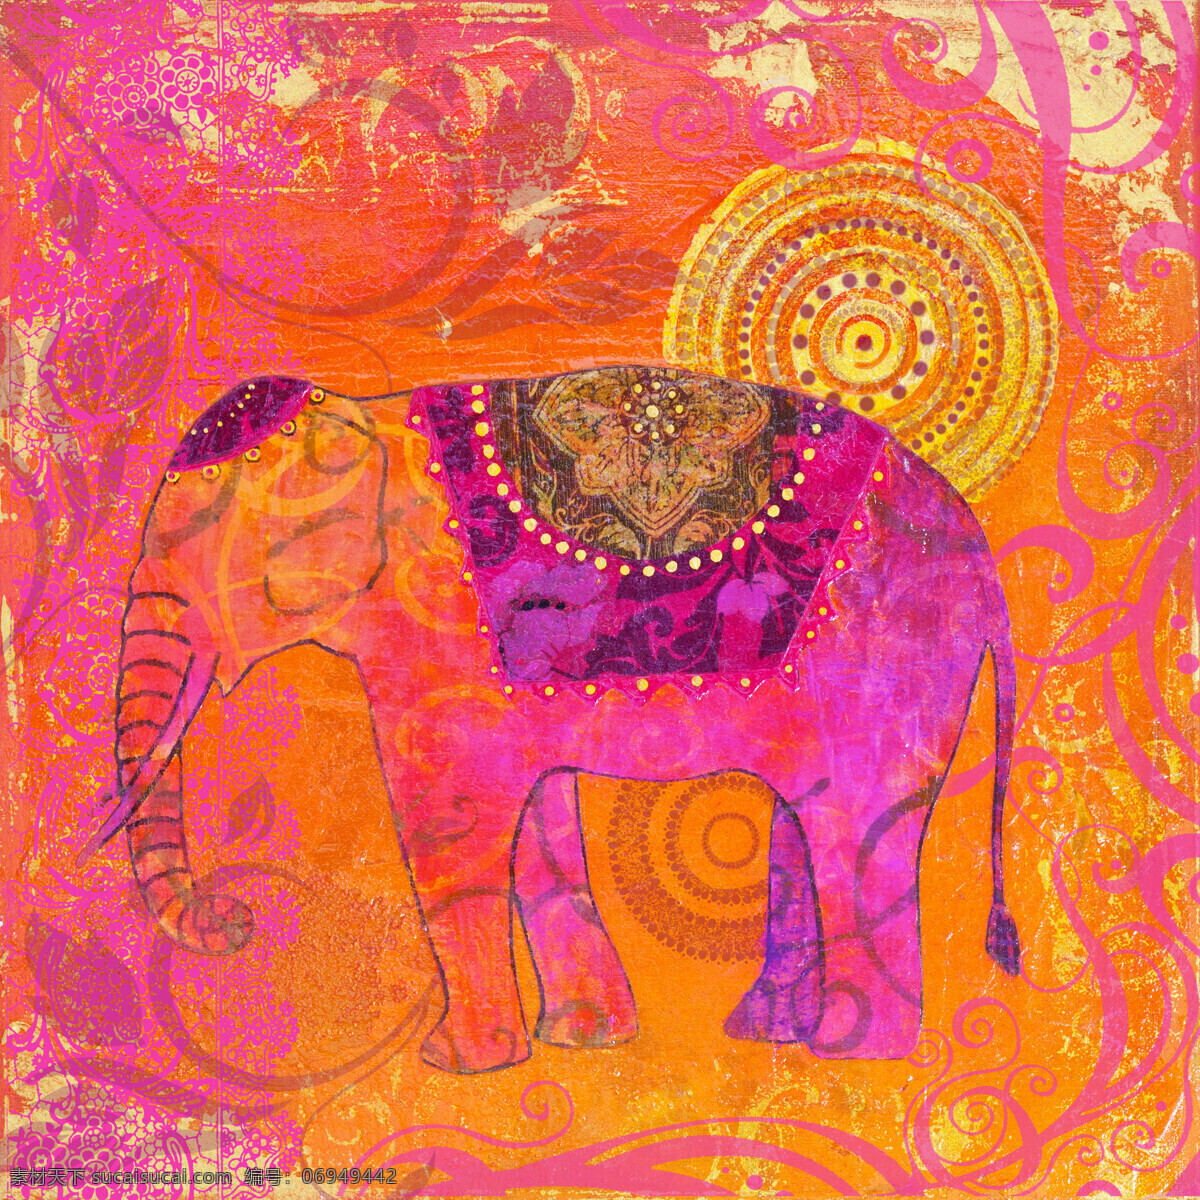 大象 油画 抽象风格 粉色背景 宗教信仰 绘画 书画文字 文化艺术